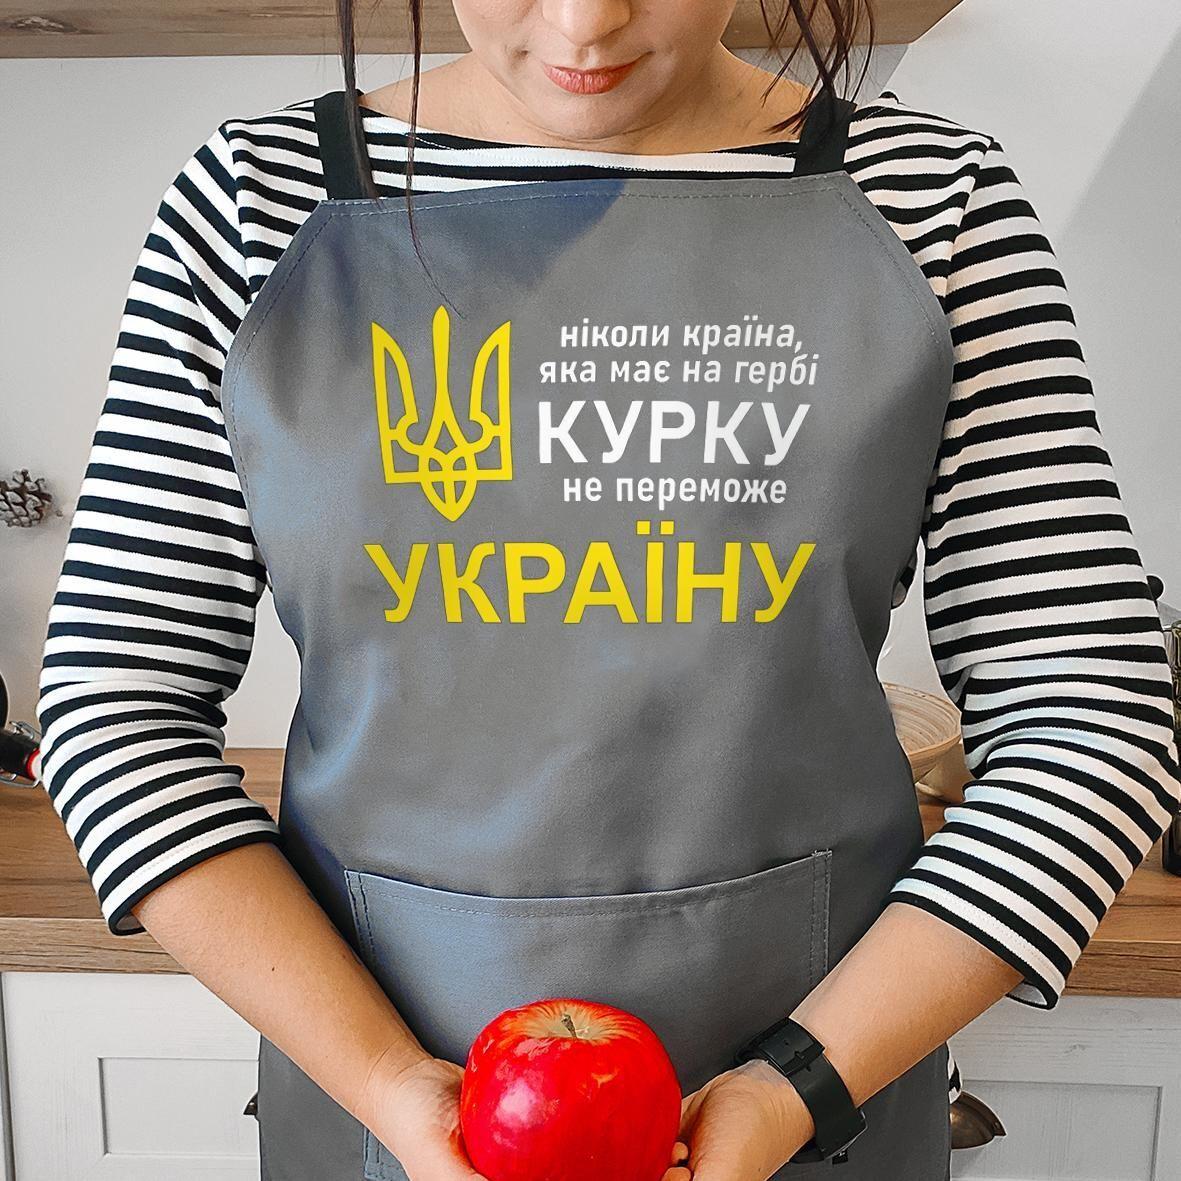 Фартук с надписью Ніколи країна, яка має на гербі курку, не переможе Україну